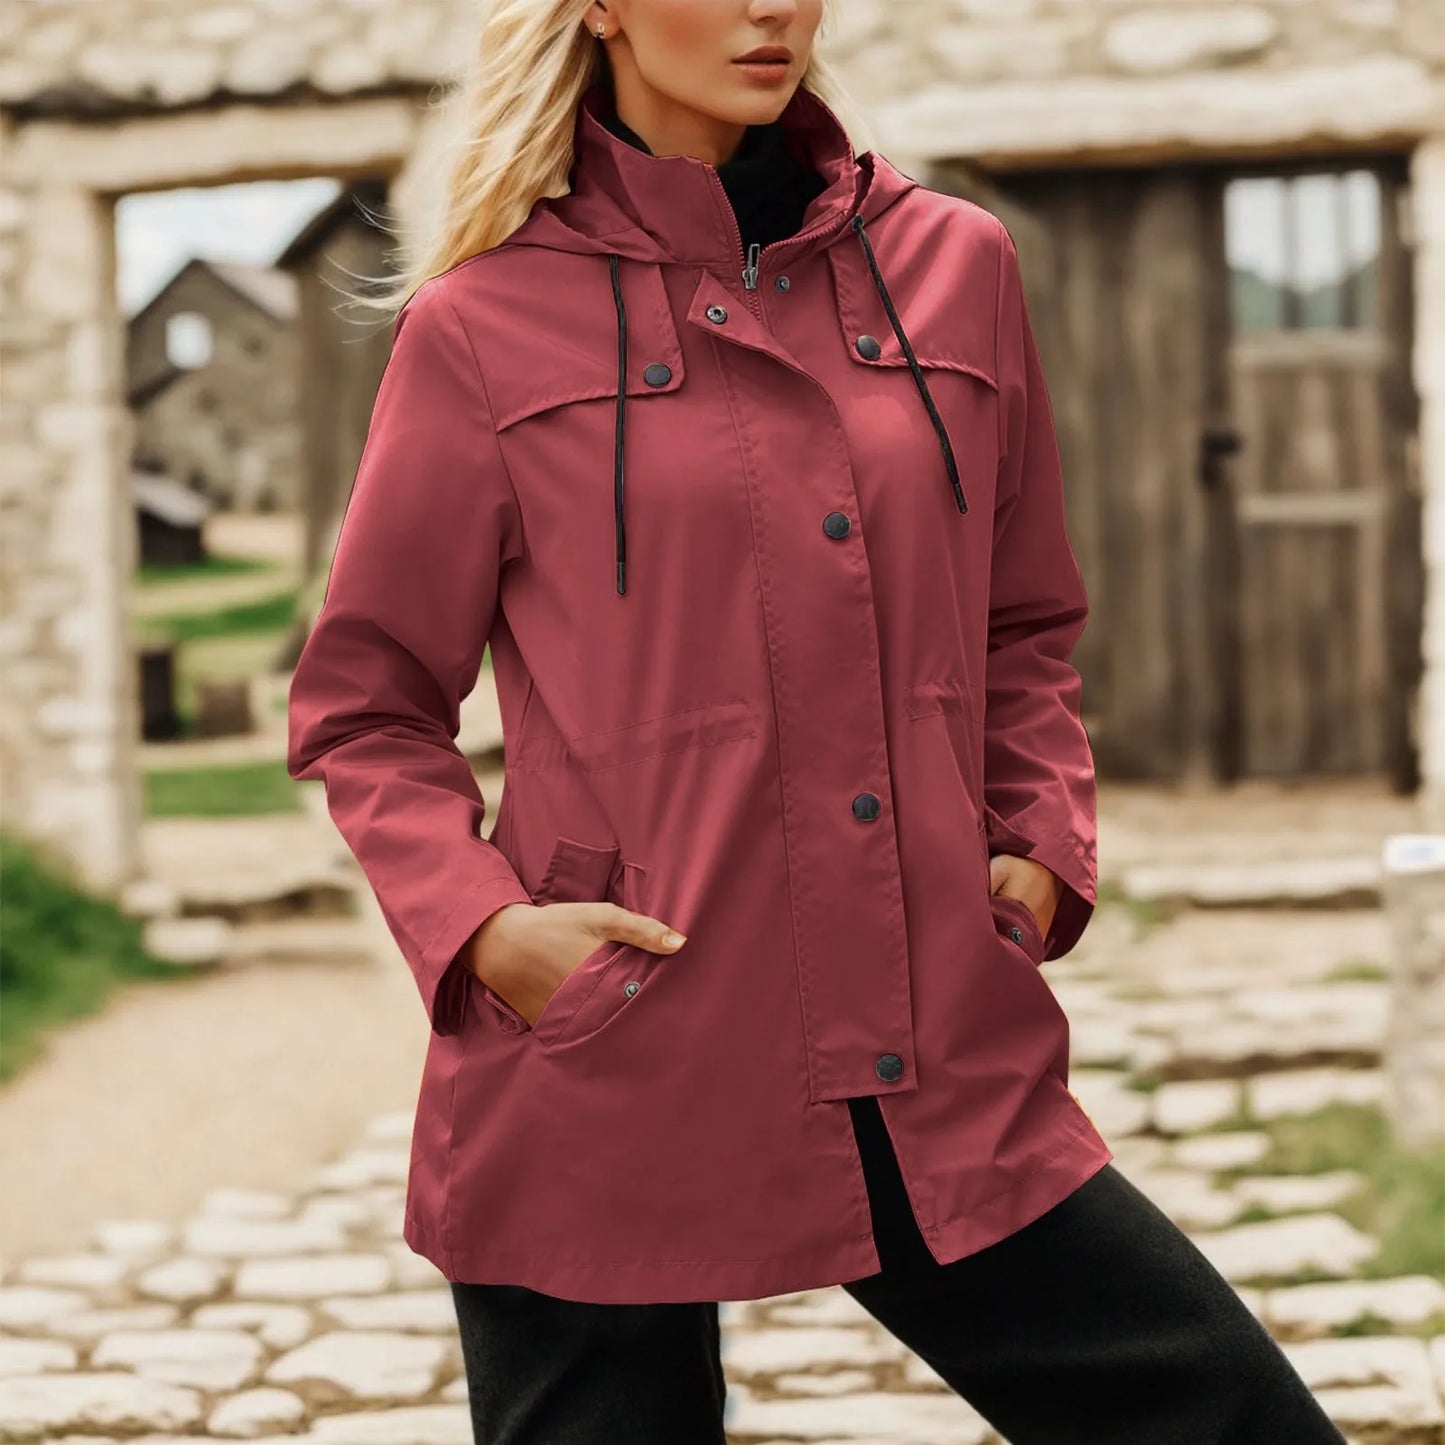 Lightweight Windproof Rainjacket Women's Outdoor Zippers Hooded Windbreaker Fall And Winter Waterproof Hiking Jacket Outerwear